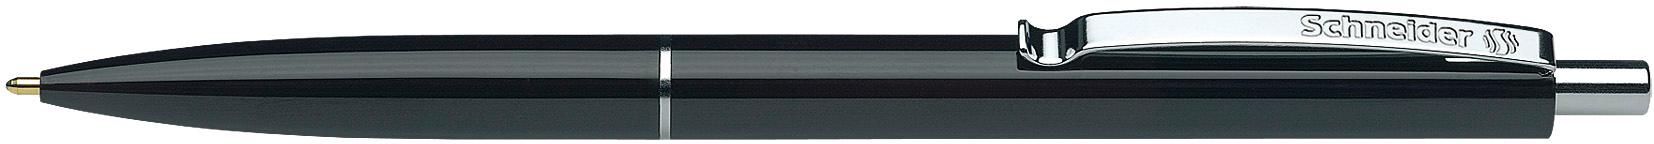 SCHNEIDER Kugelschreiber K15 JS 000574 001 OW schwarz, nachfüllbar